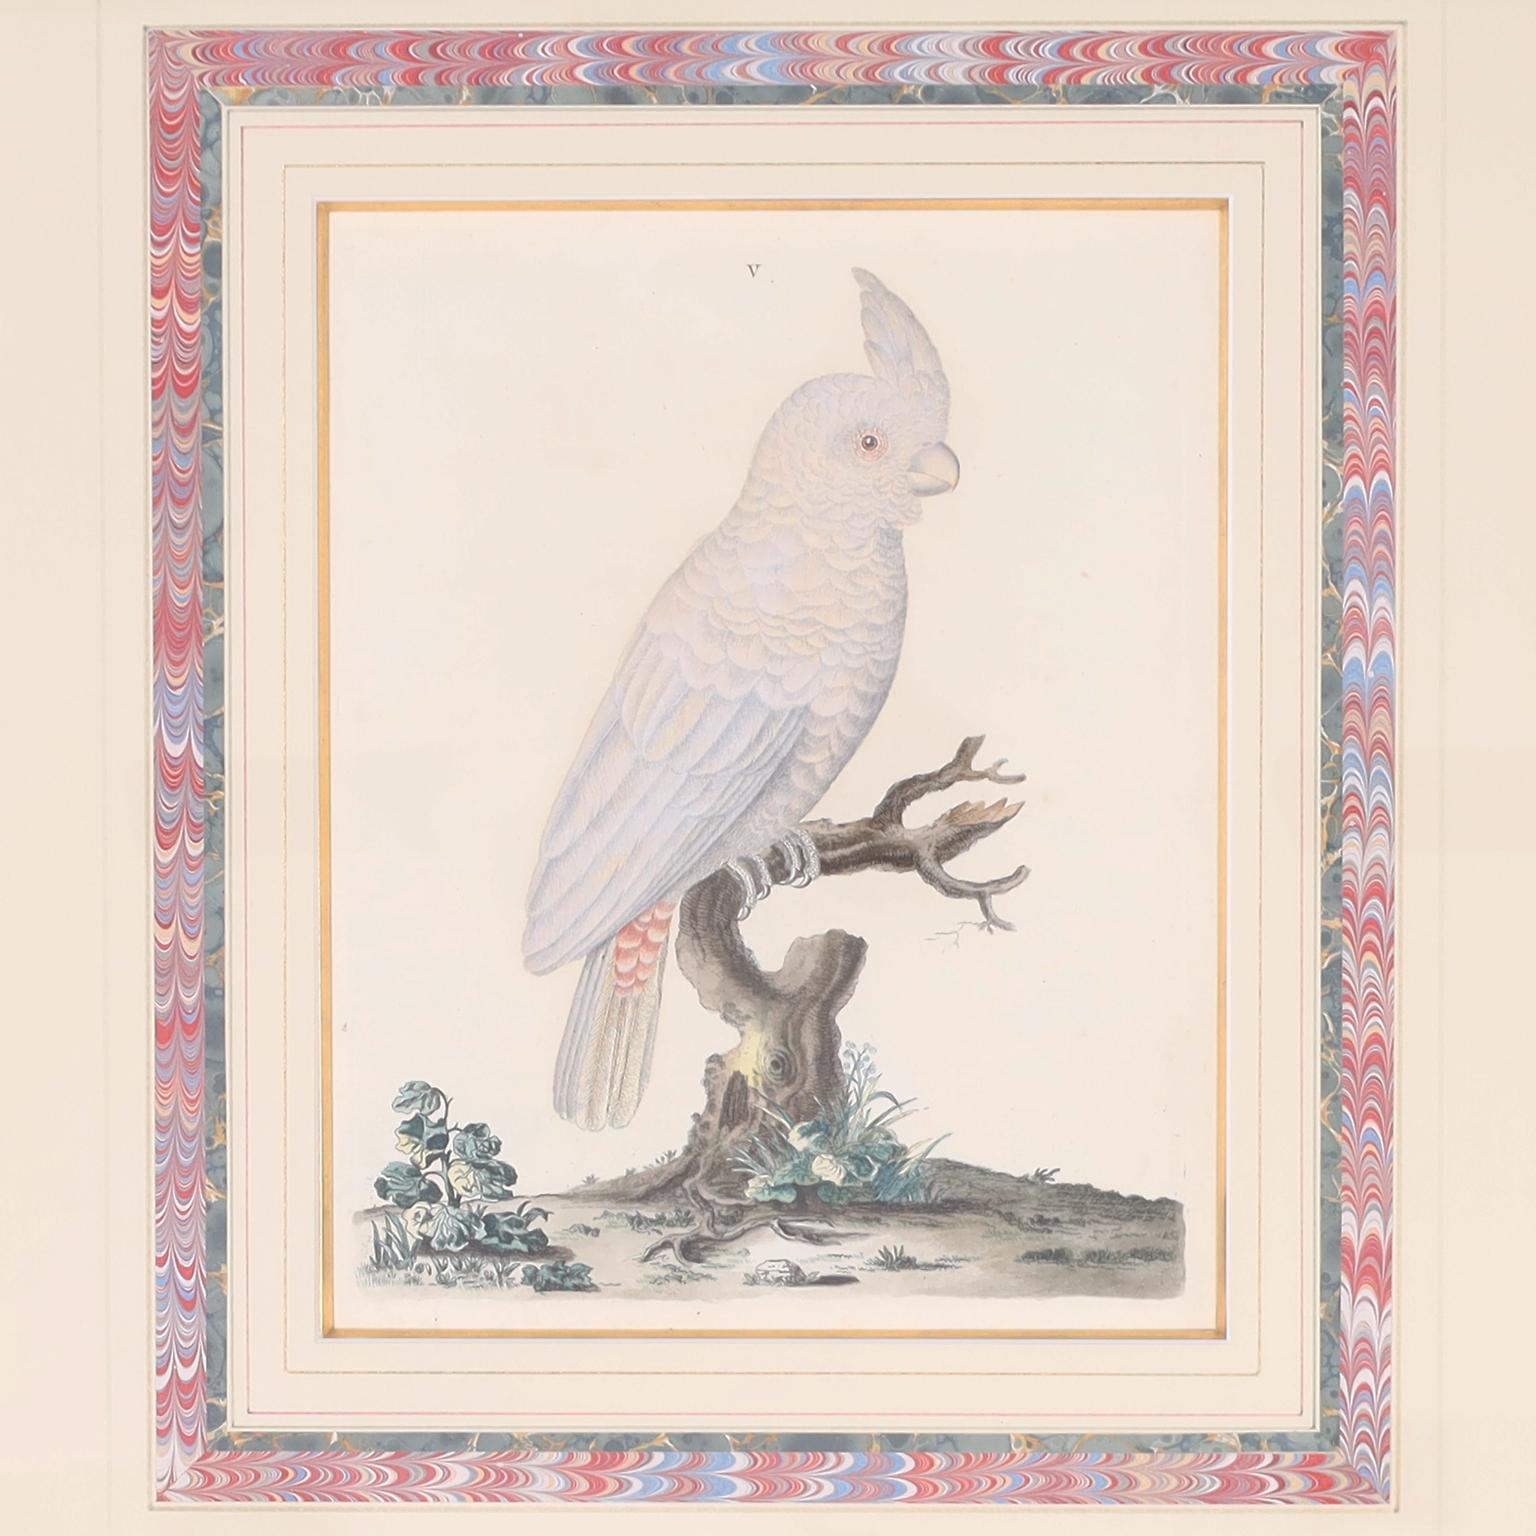 Drei handkolorierte Stiche von Papageien aus dem 18. Jahrhundert, dargestellt von Peter Brown, einem Künstler und Naturforscher, der in London England arbeitete. Ursprünglich veröffentlicht 1776 in einem Folio mit dem Titel 